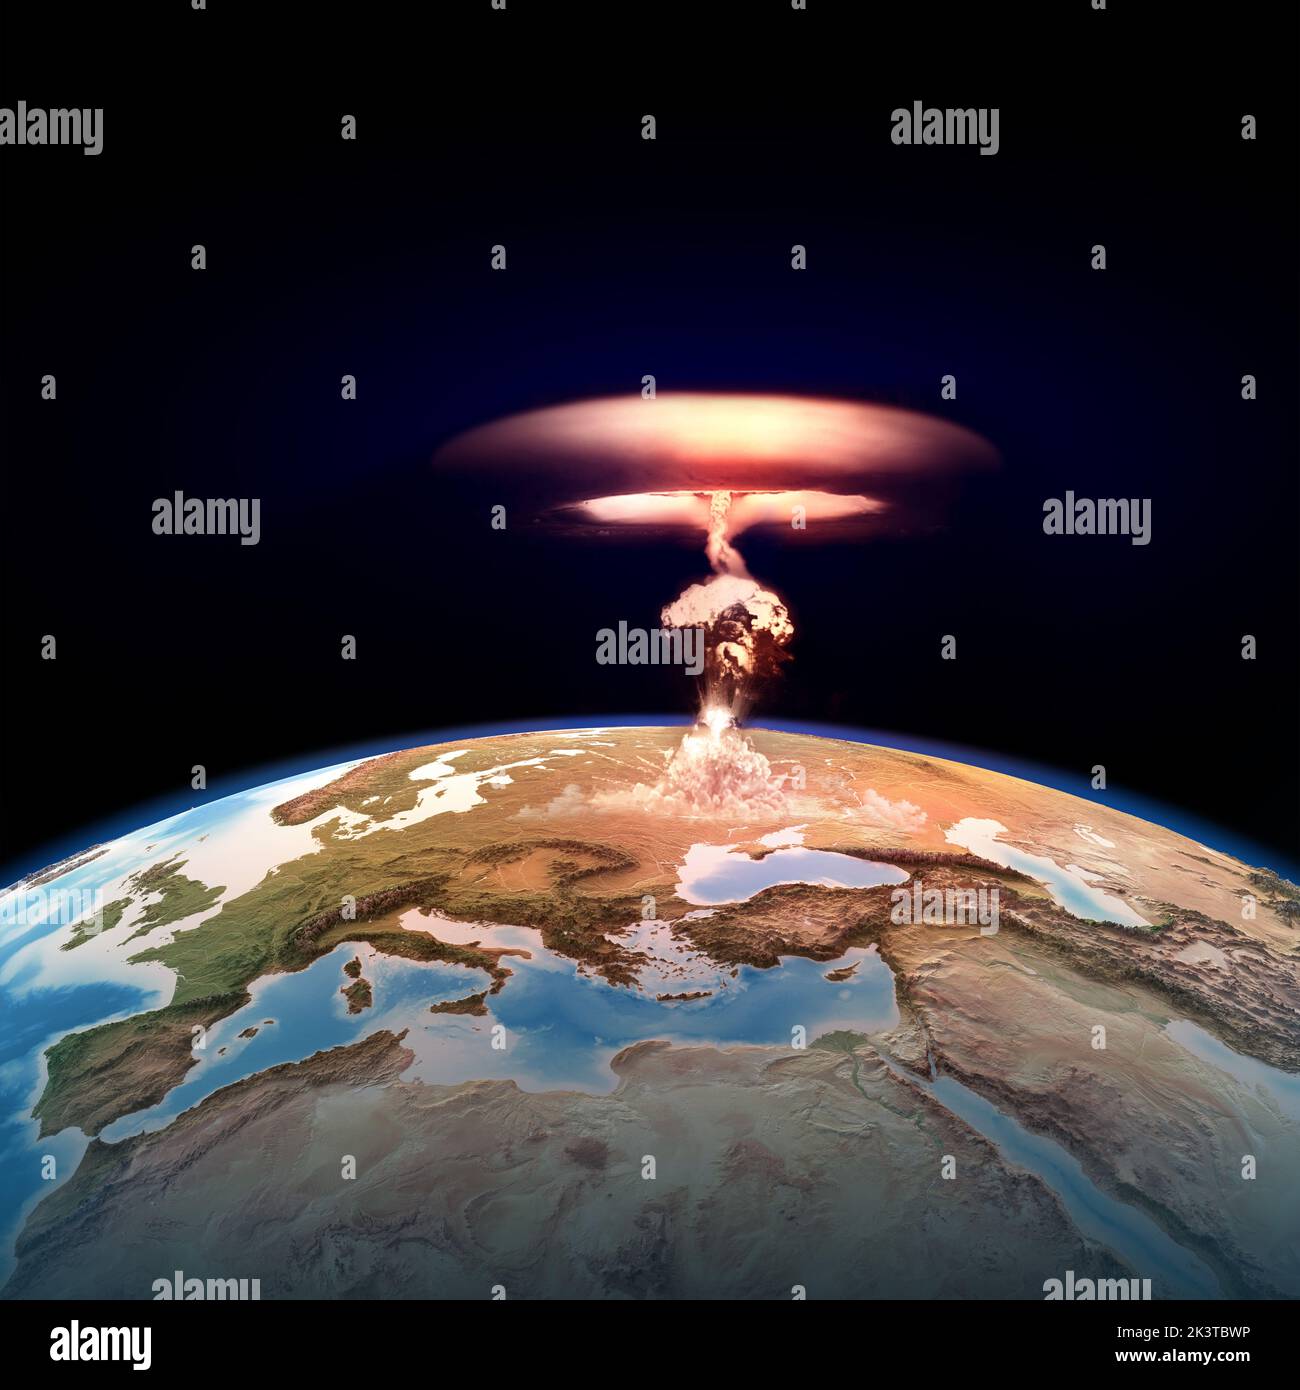 Atombombenexplosion auf Europa. Atomkrieg, der mit einer Pilzwolke beginnt, Gefahren der Atomenergie für den Planeten Erde - Elemente, die von der NASA bereitgestellt werden Stockfoto